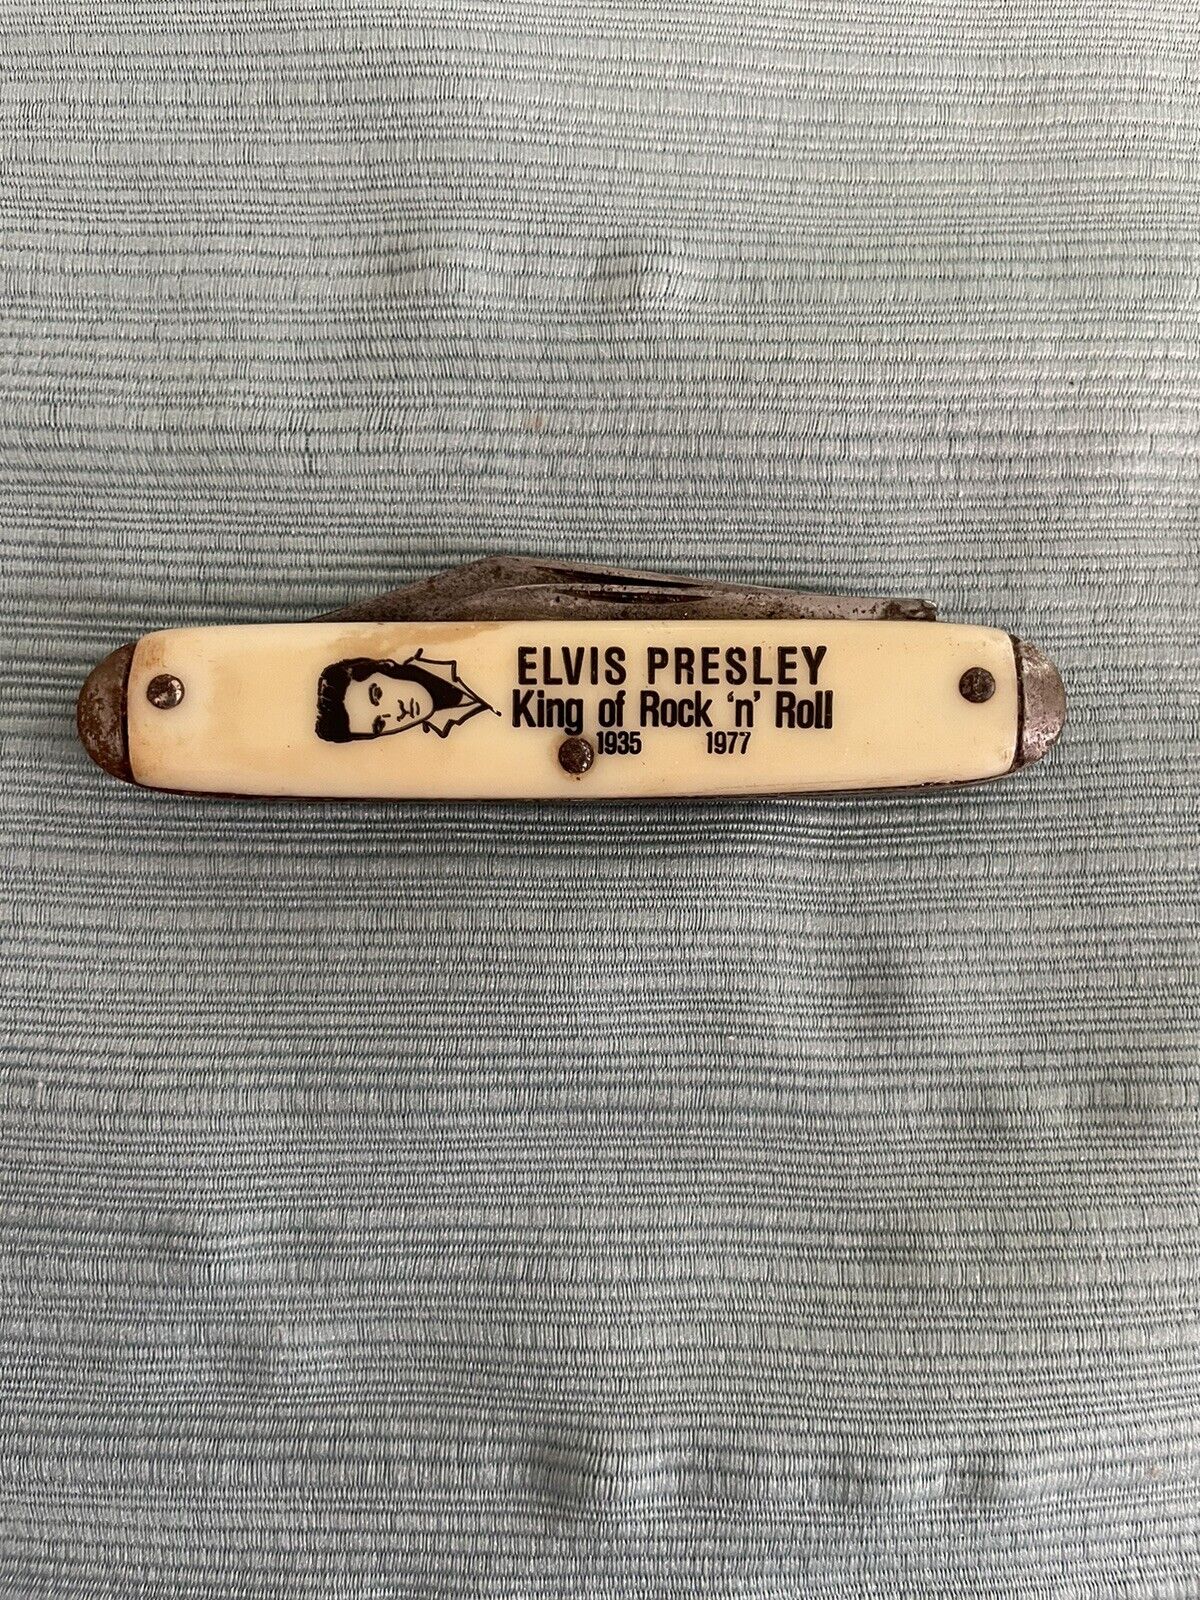 Vintage Elvis Presley Pocket Knife 